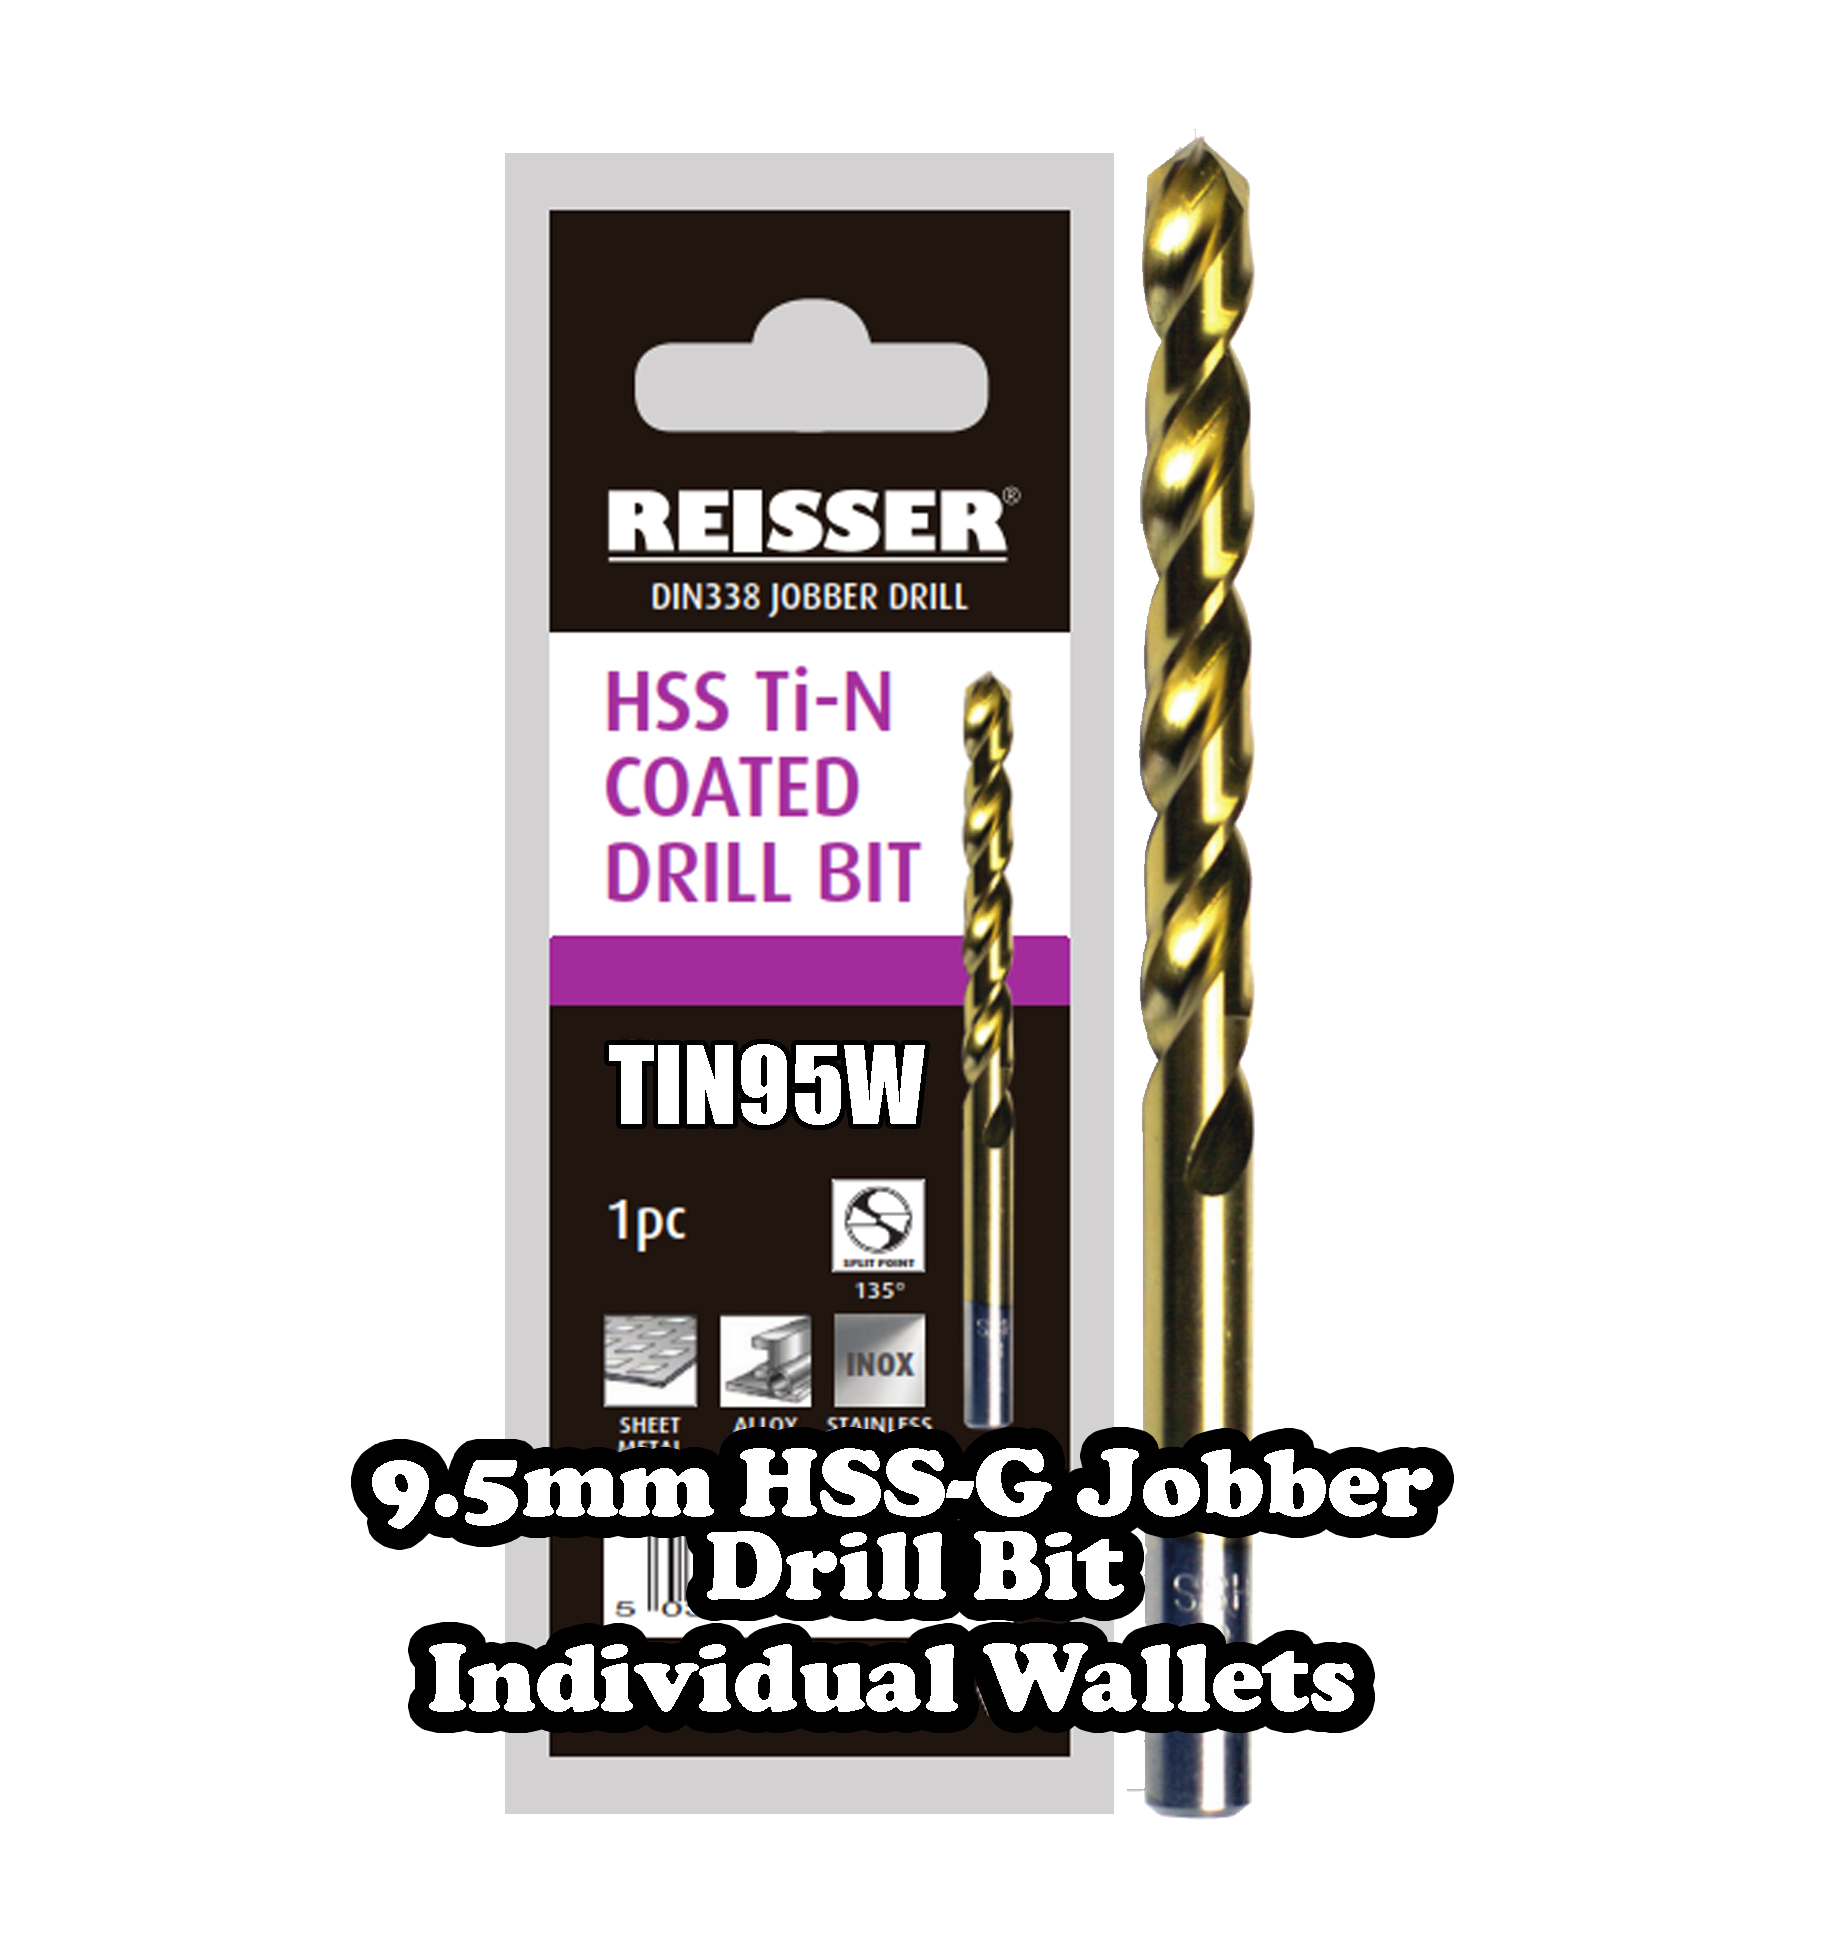 9.5mm HSS Jobber Drill Bit (SINGLE WALLET)